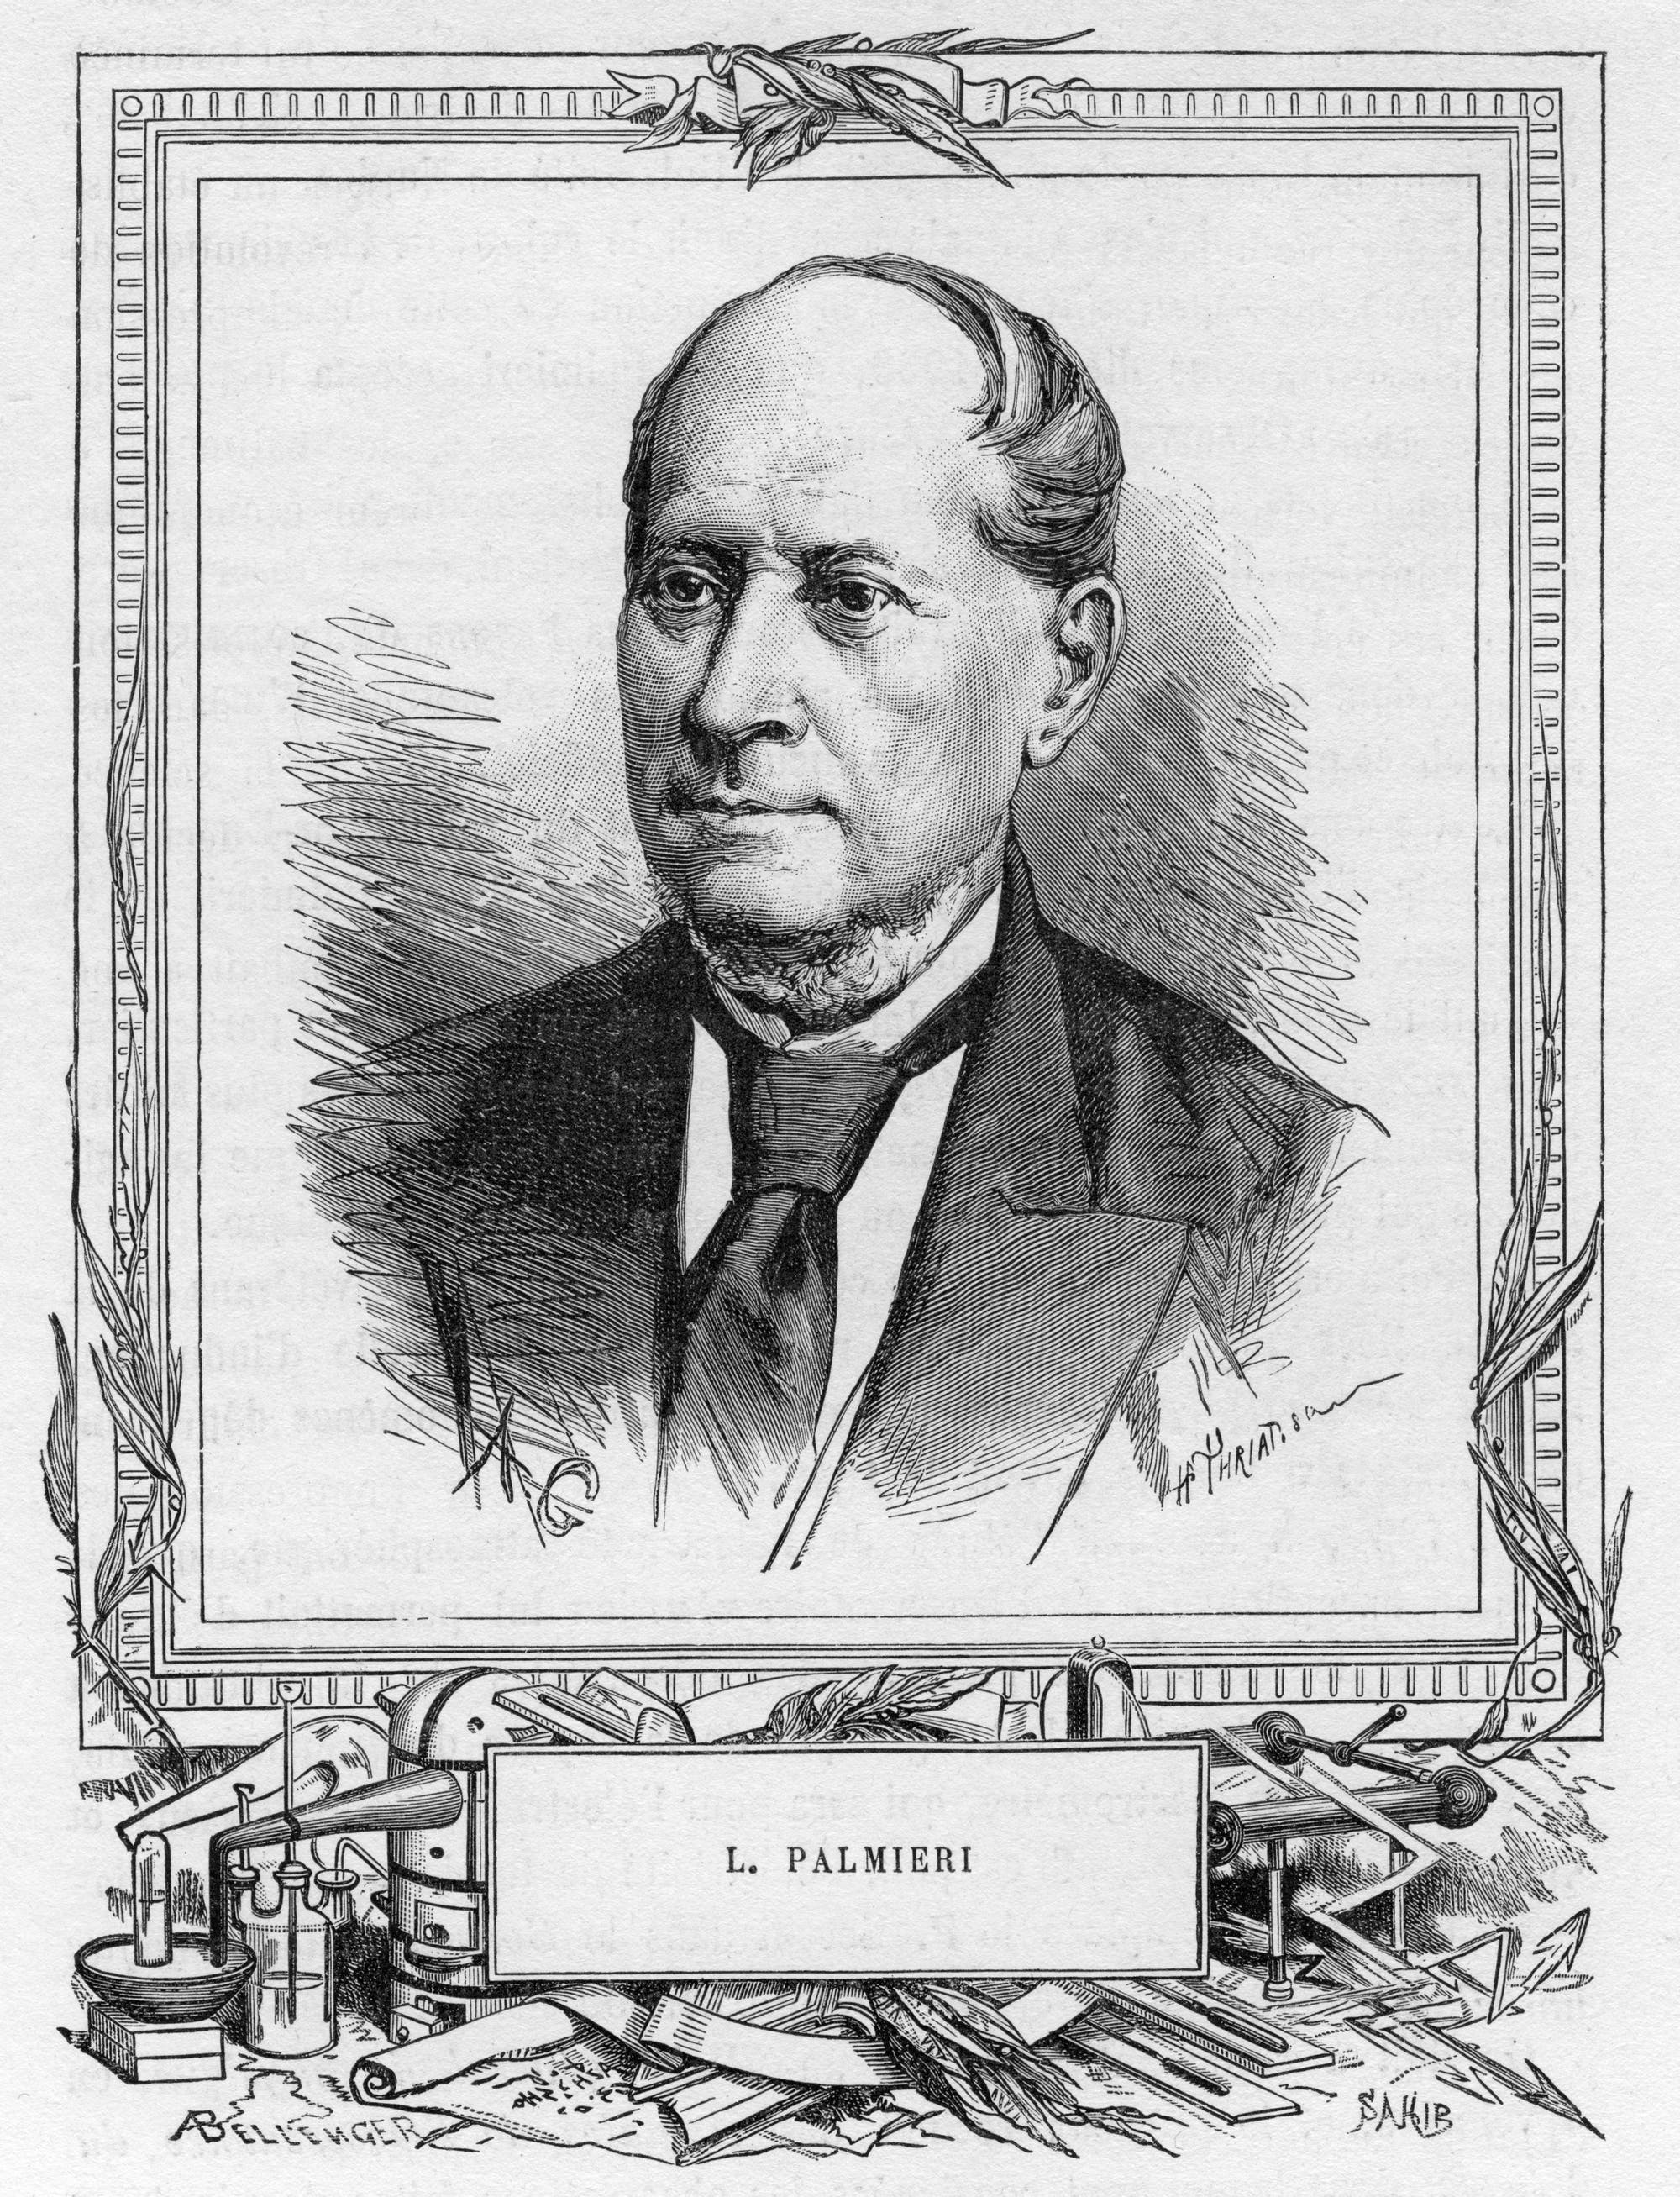 Der Vulkanologe Luigi Palmieri (1807–1896) in einem Porträt.